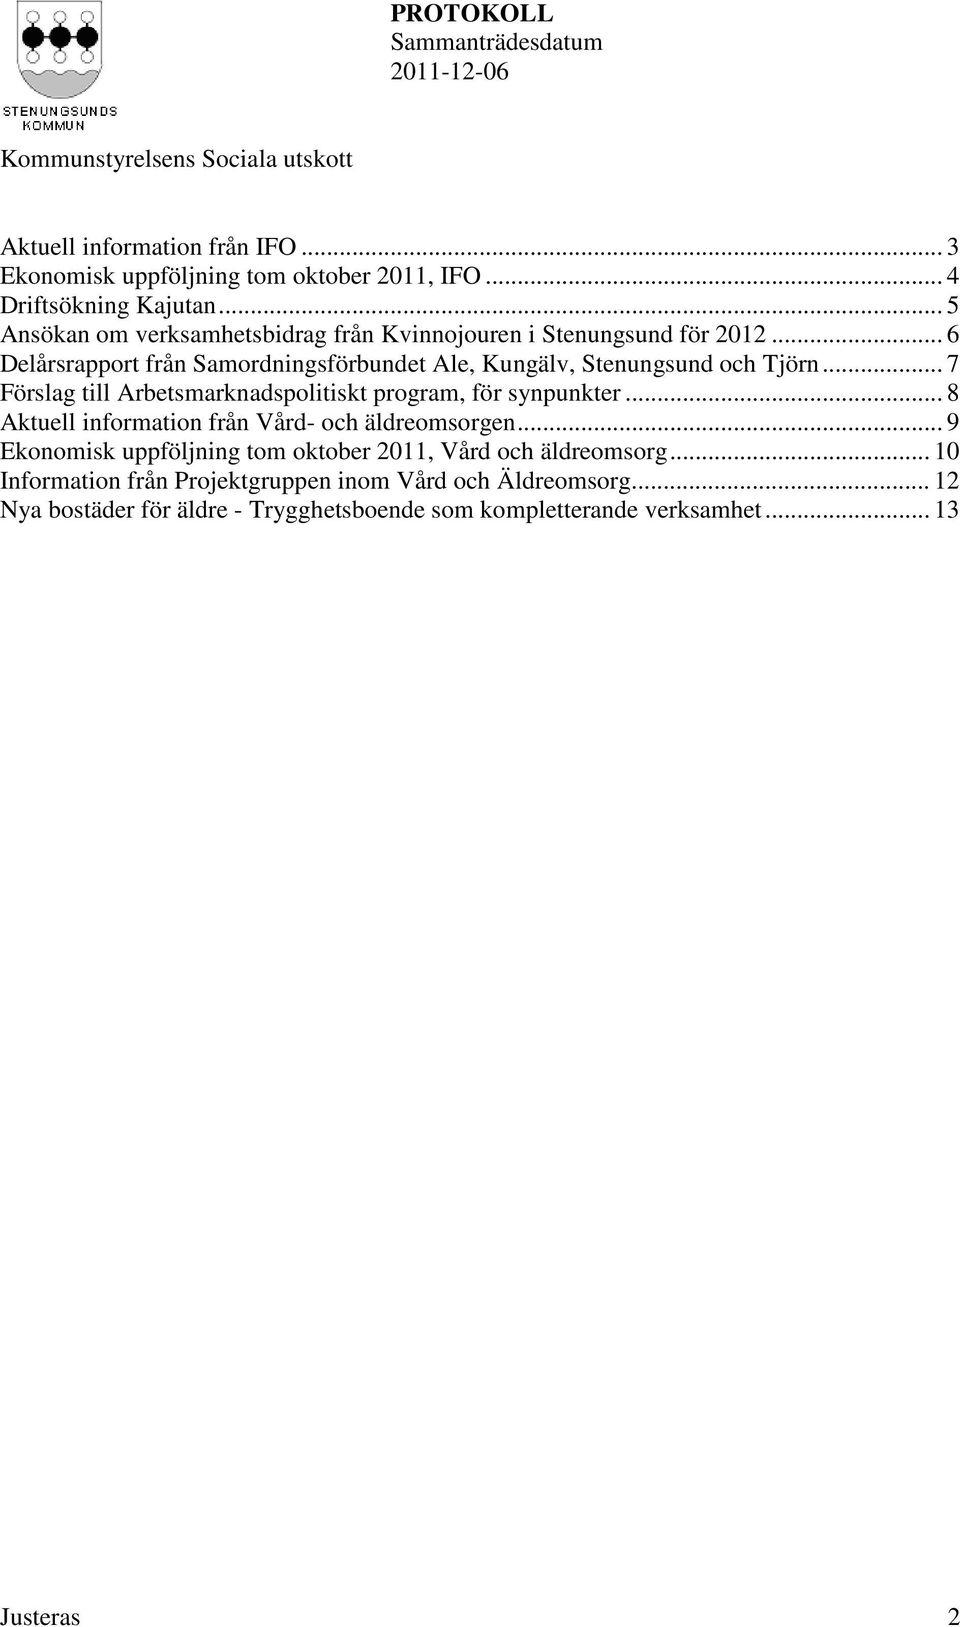 .. 6 Delårsrapport från Samordningsförbundet Ale, Kungälv, Stenungsund och Tjörn... 7 Förslag till Arbetsmarknadspolitiskt program, för synpunkter.